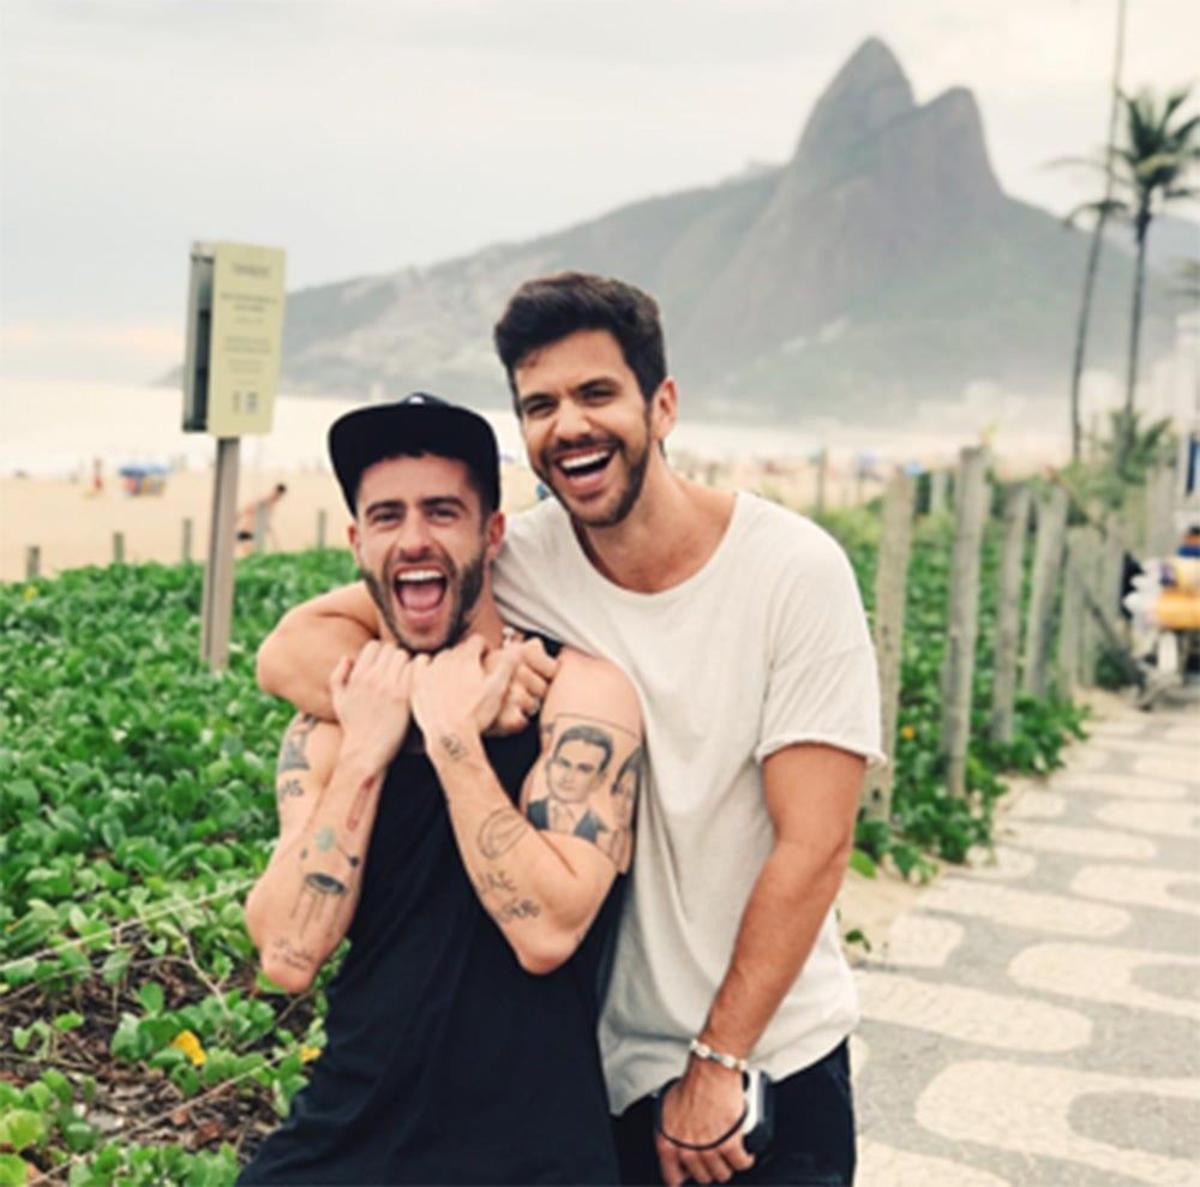 Pelayo Díaz y su chico de vacaciones en Brasil